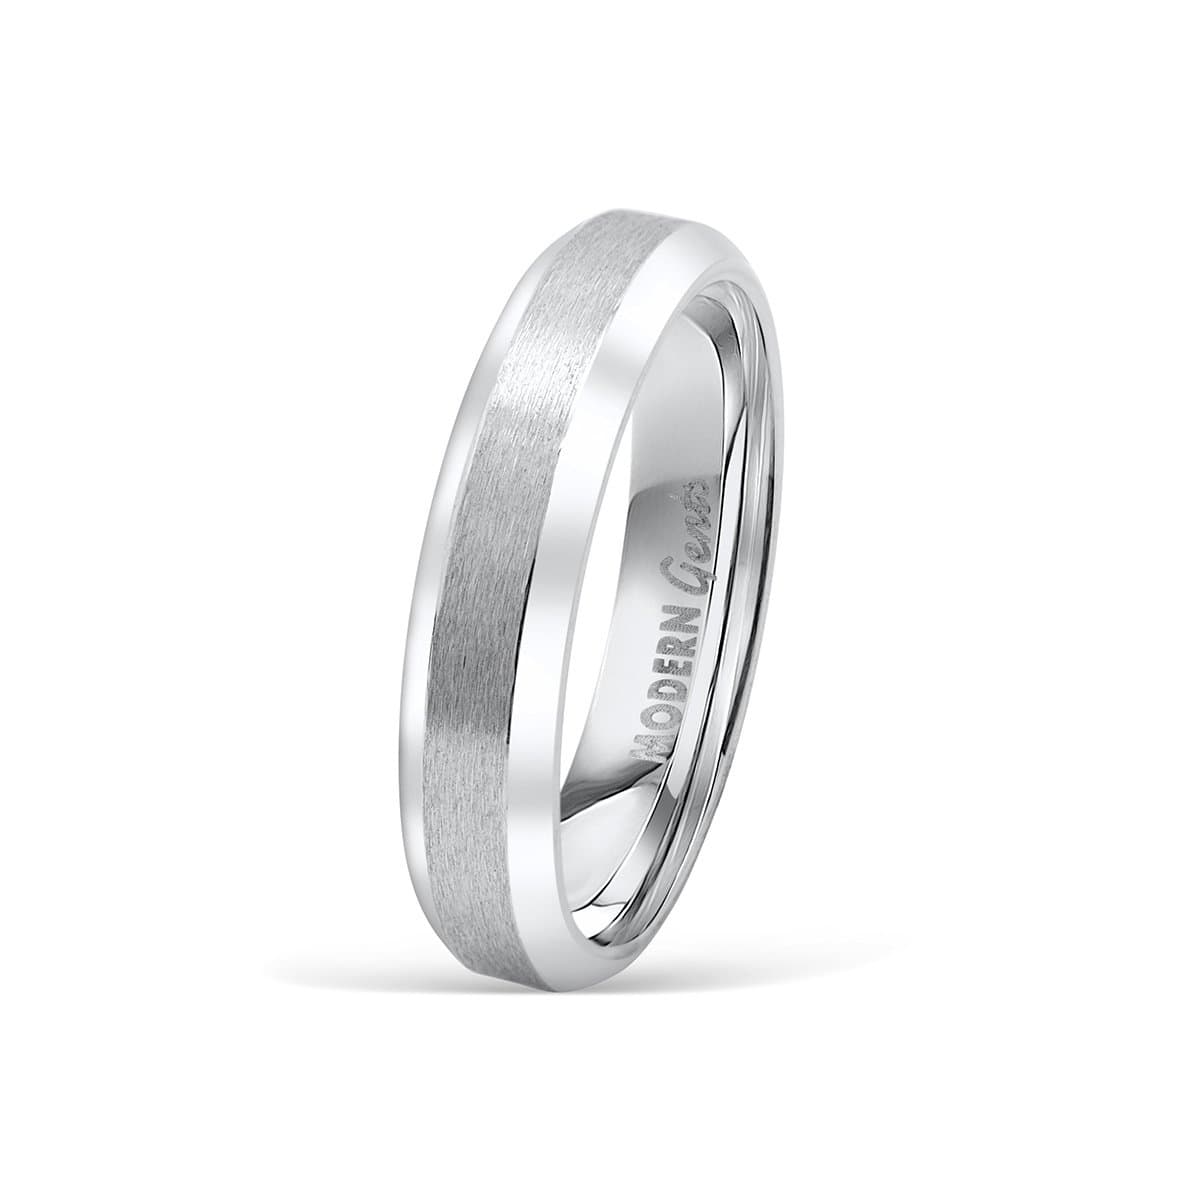 Mens Ring, Promise Rings for Men, Engraved Ring, Wedding Ring for Him,